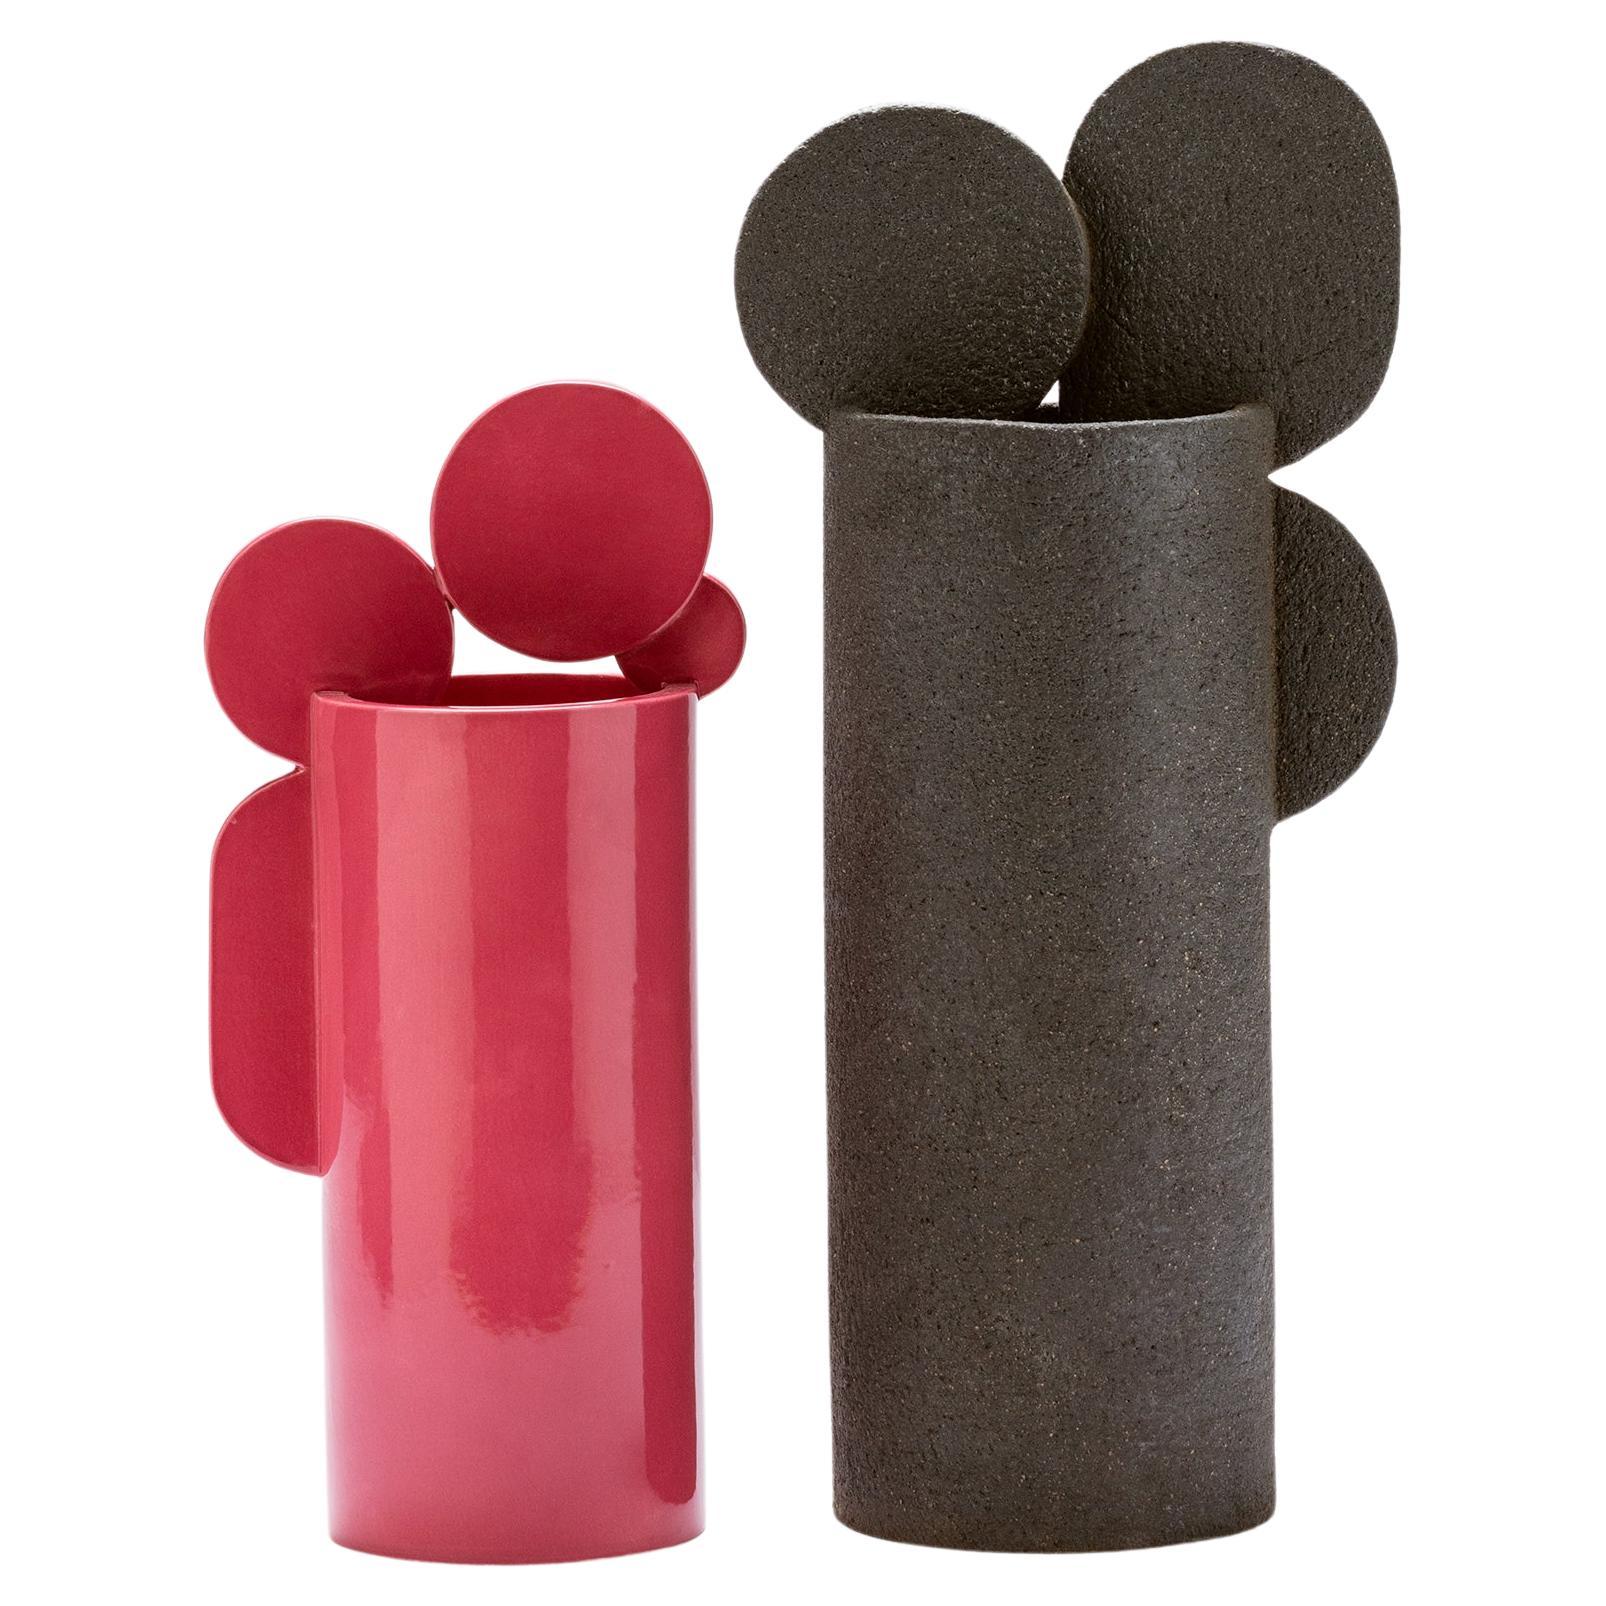 Duo-Satz  Kiss-Vase aus Terrakotta und glasierter Keramik in glänzender Reihe, hergestellt in Italien